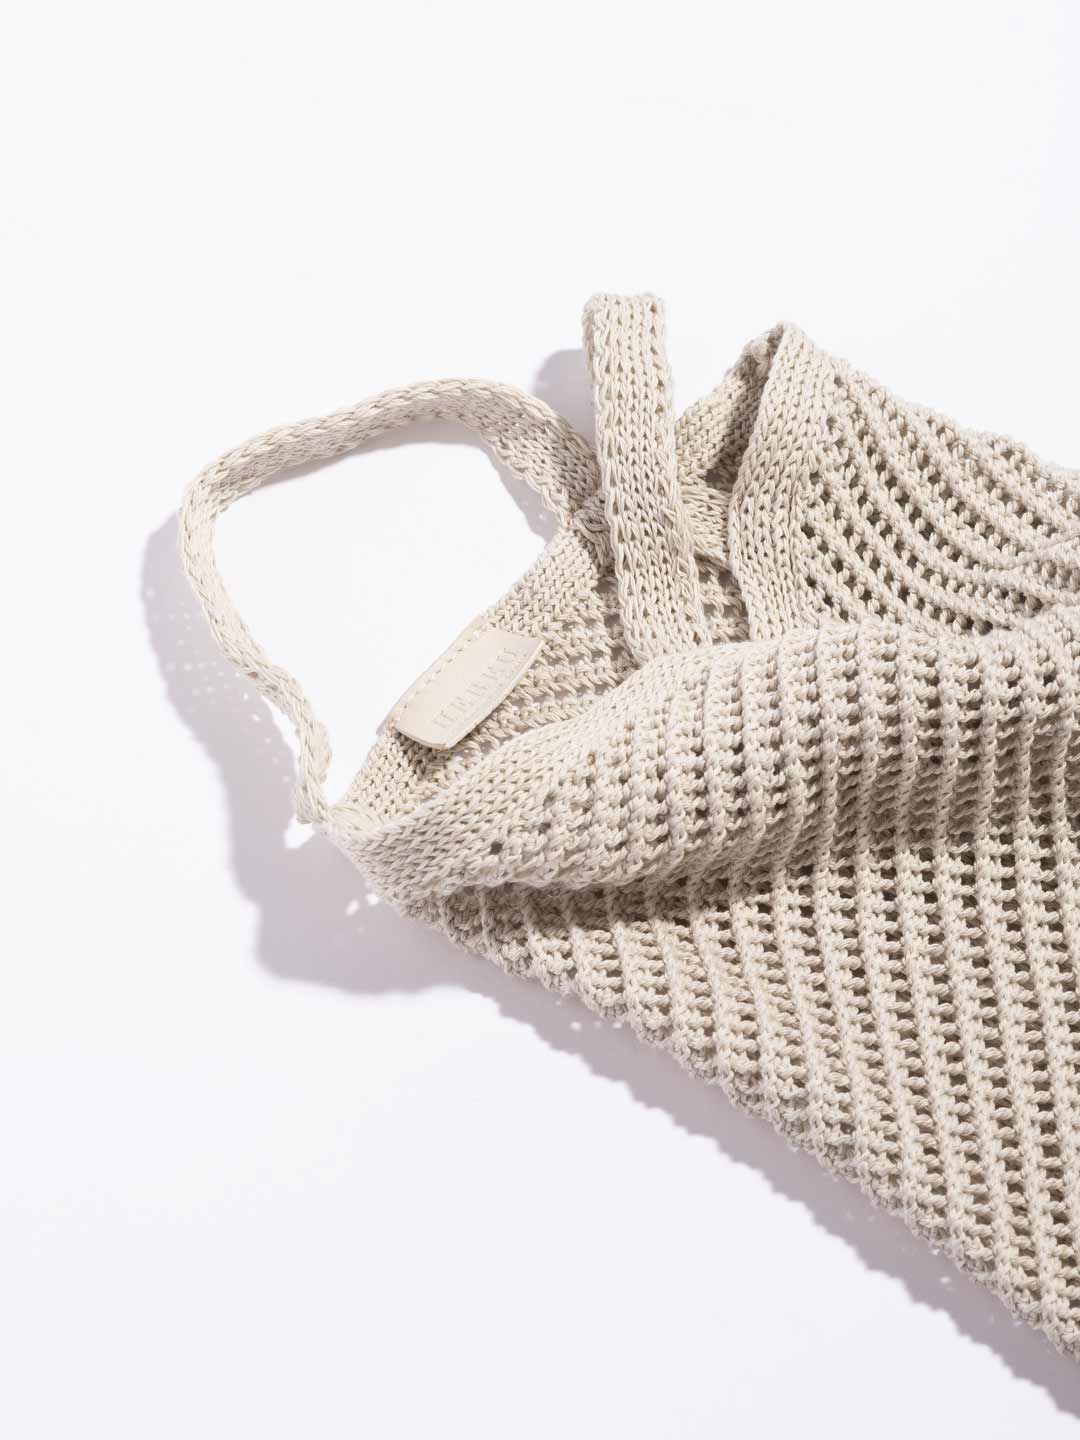 Fruita Packable Knitted Cotton Net Bag - Cream